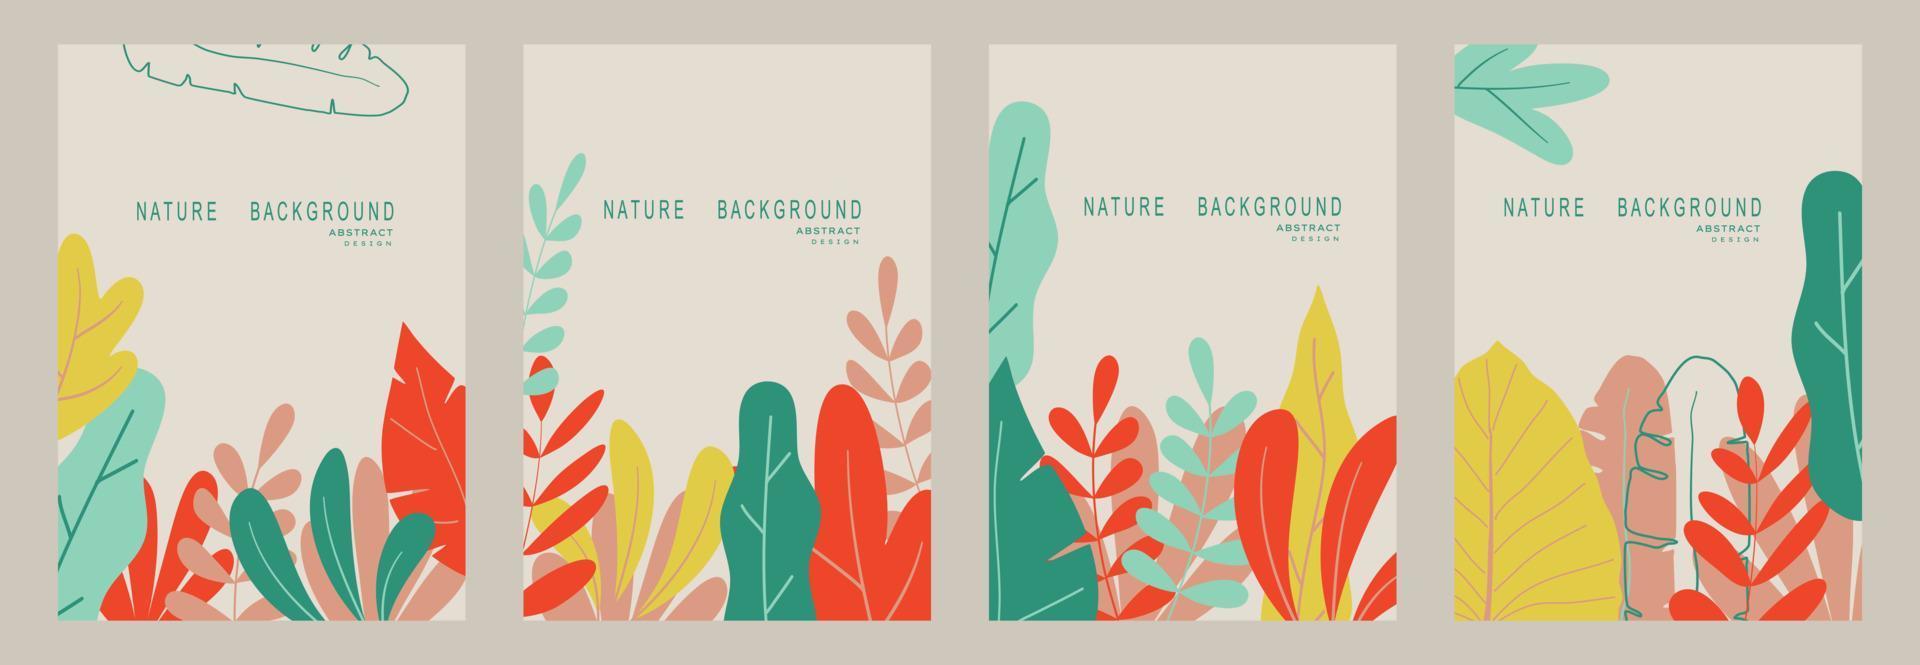 abstrakter naturhintergrund mit blättern und pflanzen. Platz für Text kopieren. Vektor-Illustration vektor